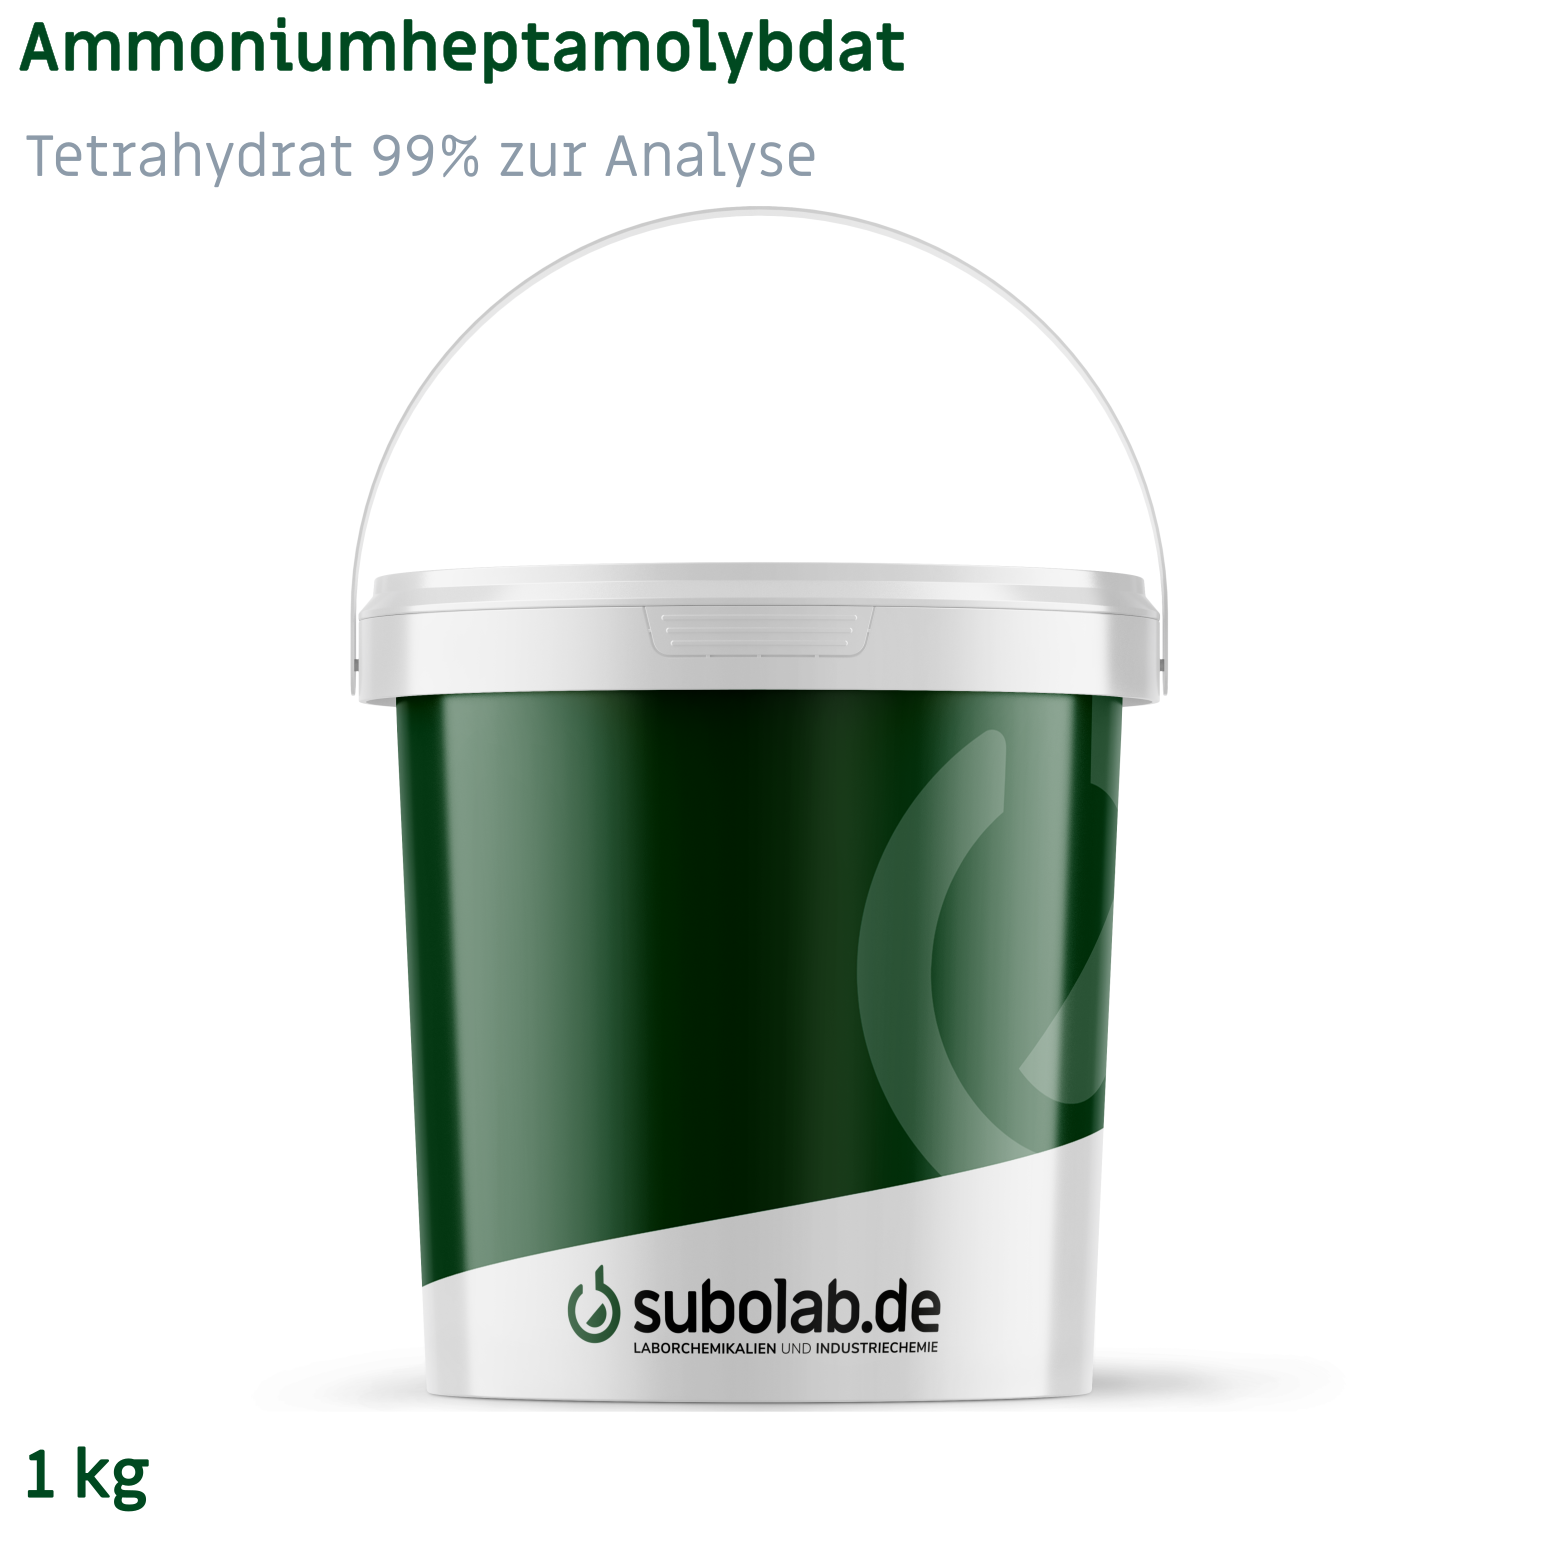 Bild von Ammoniumheptamolybdat - Tetrahydrat 99% zur Analyse (1 kg)